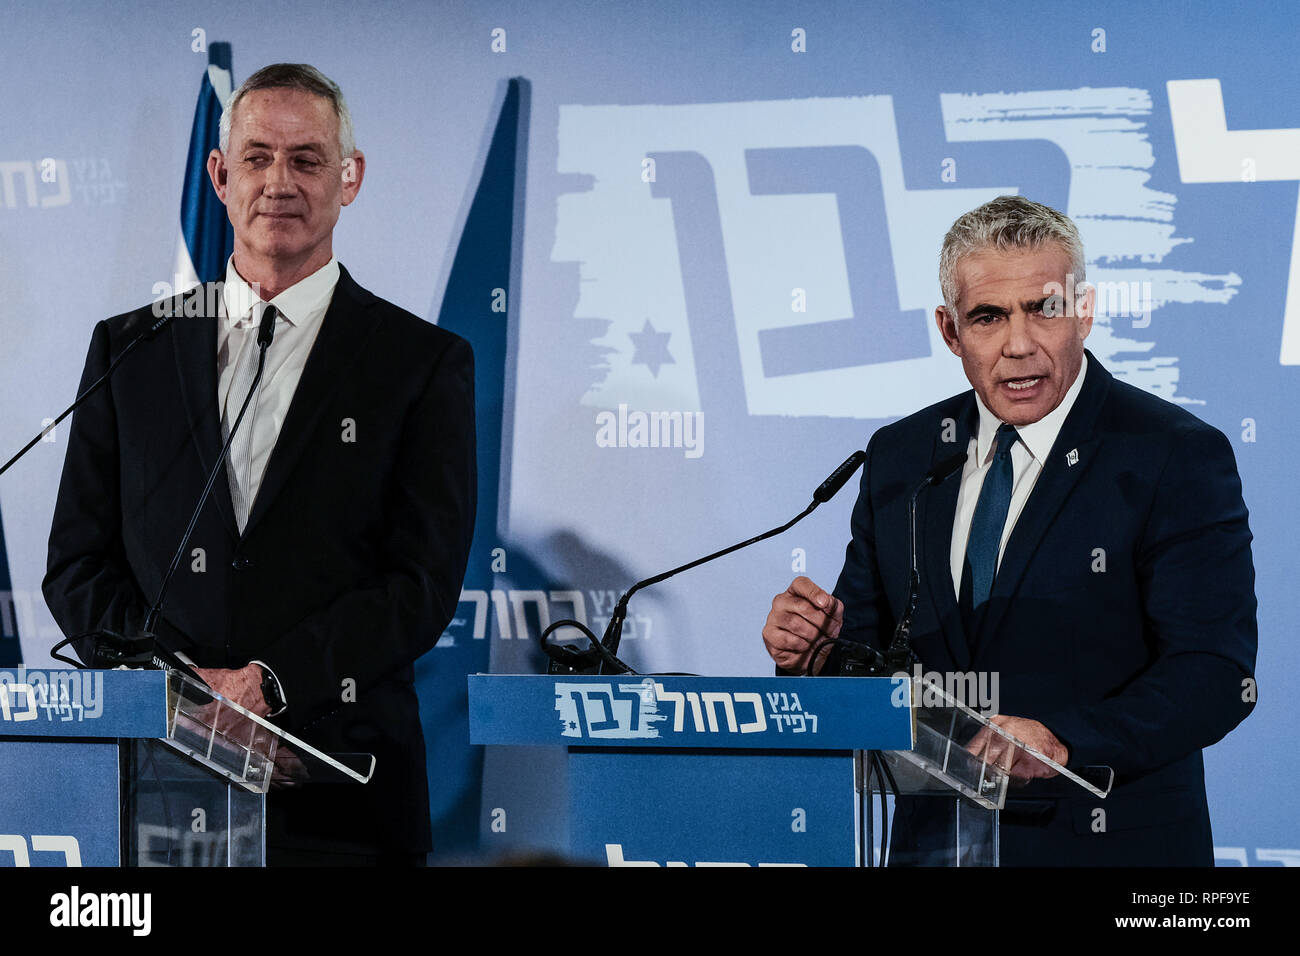 Tel Aviv, Israel. 21 Feb, 2019. Israel Widerstandsfähigkeit Parteichef BENNY GANTZ (L) und Yesh Atid leader Yair Lapid (R) offiziell verkünden ihre gemeinsame Knesset laufen im April 9 Wahl auf einer Pressekonferenz in Tel Aviv. Die neue "Blaue und Weiße Partei" schafft einen Block mit der PM Netanyahu Likud zu konkurrieren. Gantz und Lapid werden abwechselnd als Premierminister. Ehemalige IDF Stabschefs Moshe Yaalon und Gabi Ashkenazi wird auch auf der Liste stehen. Credit: Nir Alon/Alamy leben Nachrichten Stockfoto